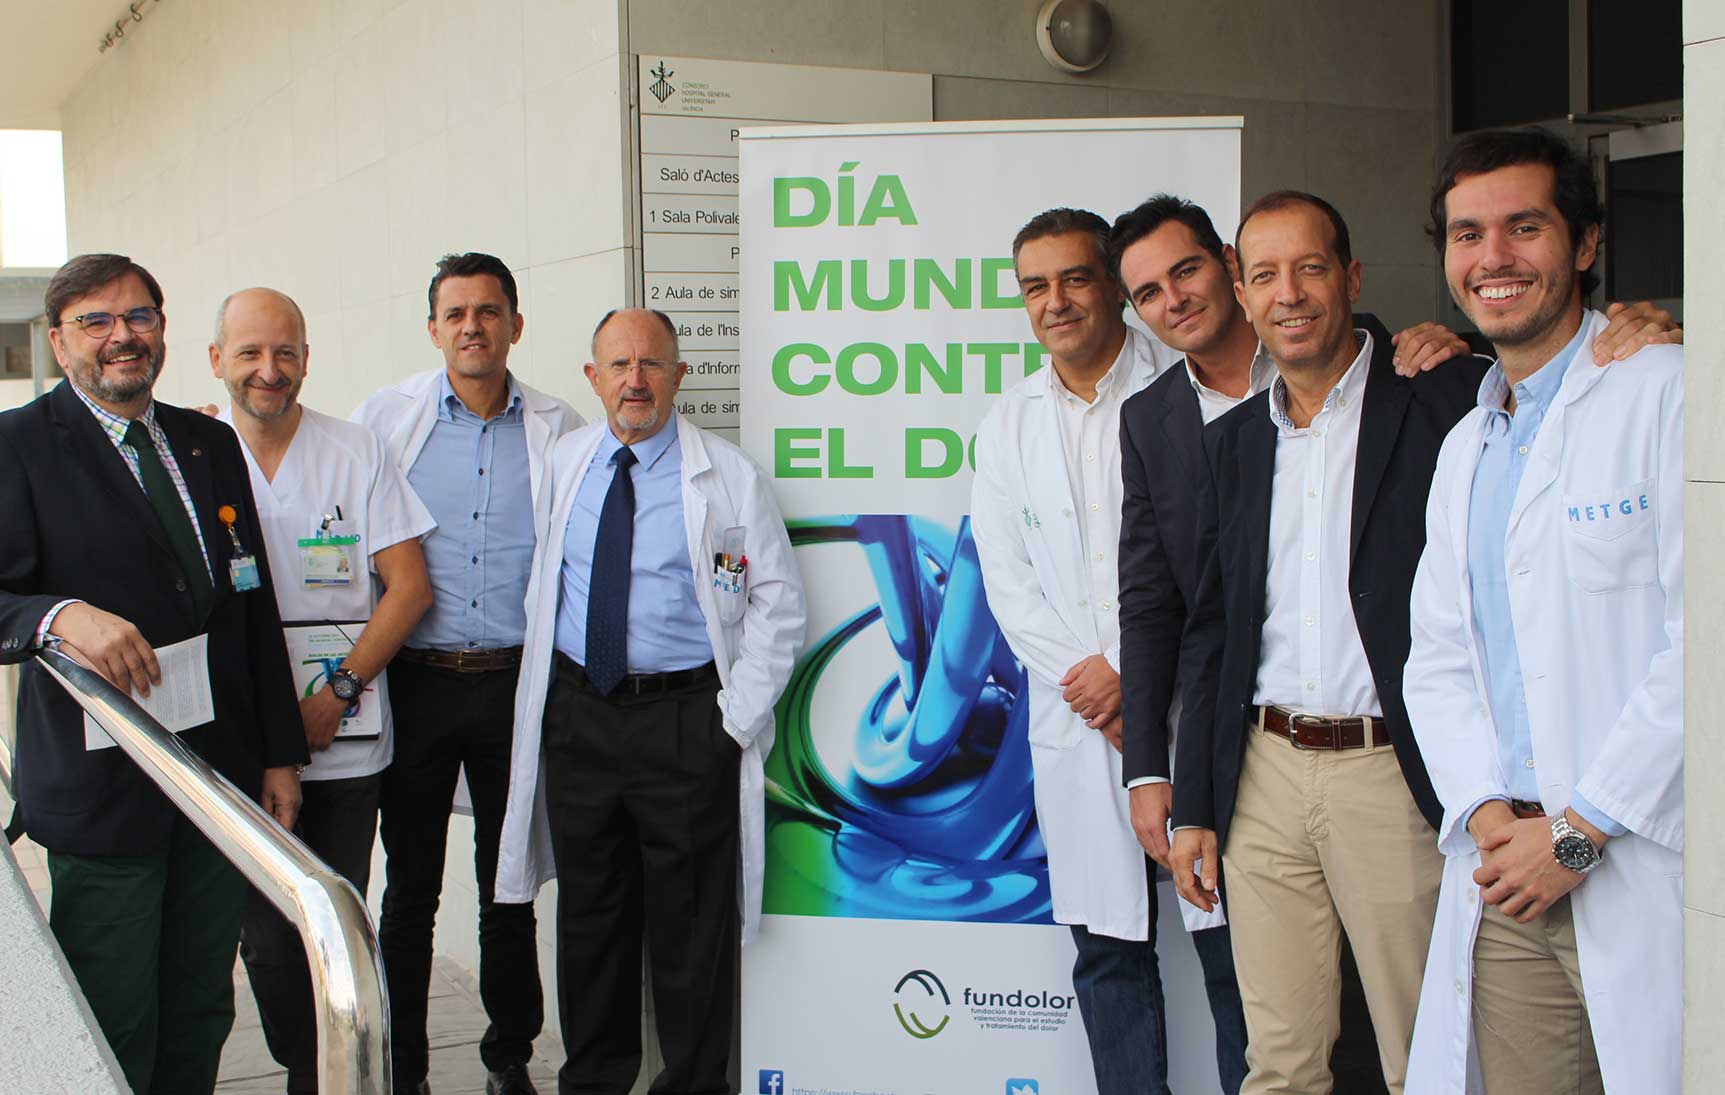 El Hospital General de Valencia celebra una jornada divulgativa y de sensibilización sobre el tratamiento del dolor articular